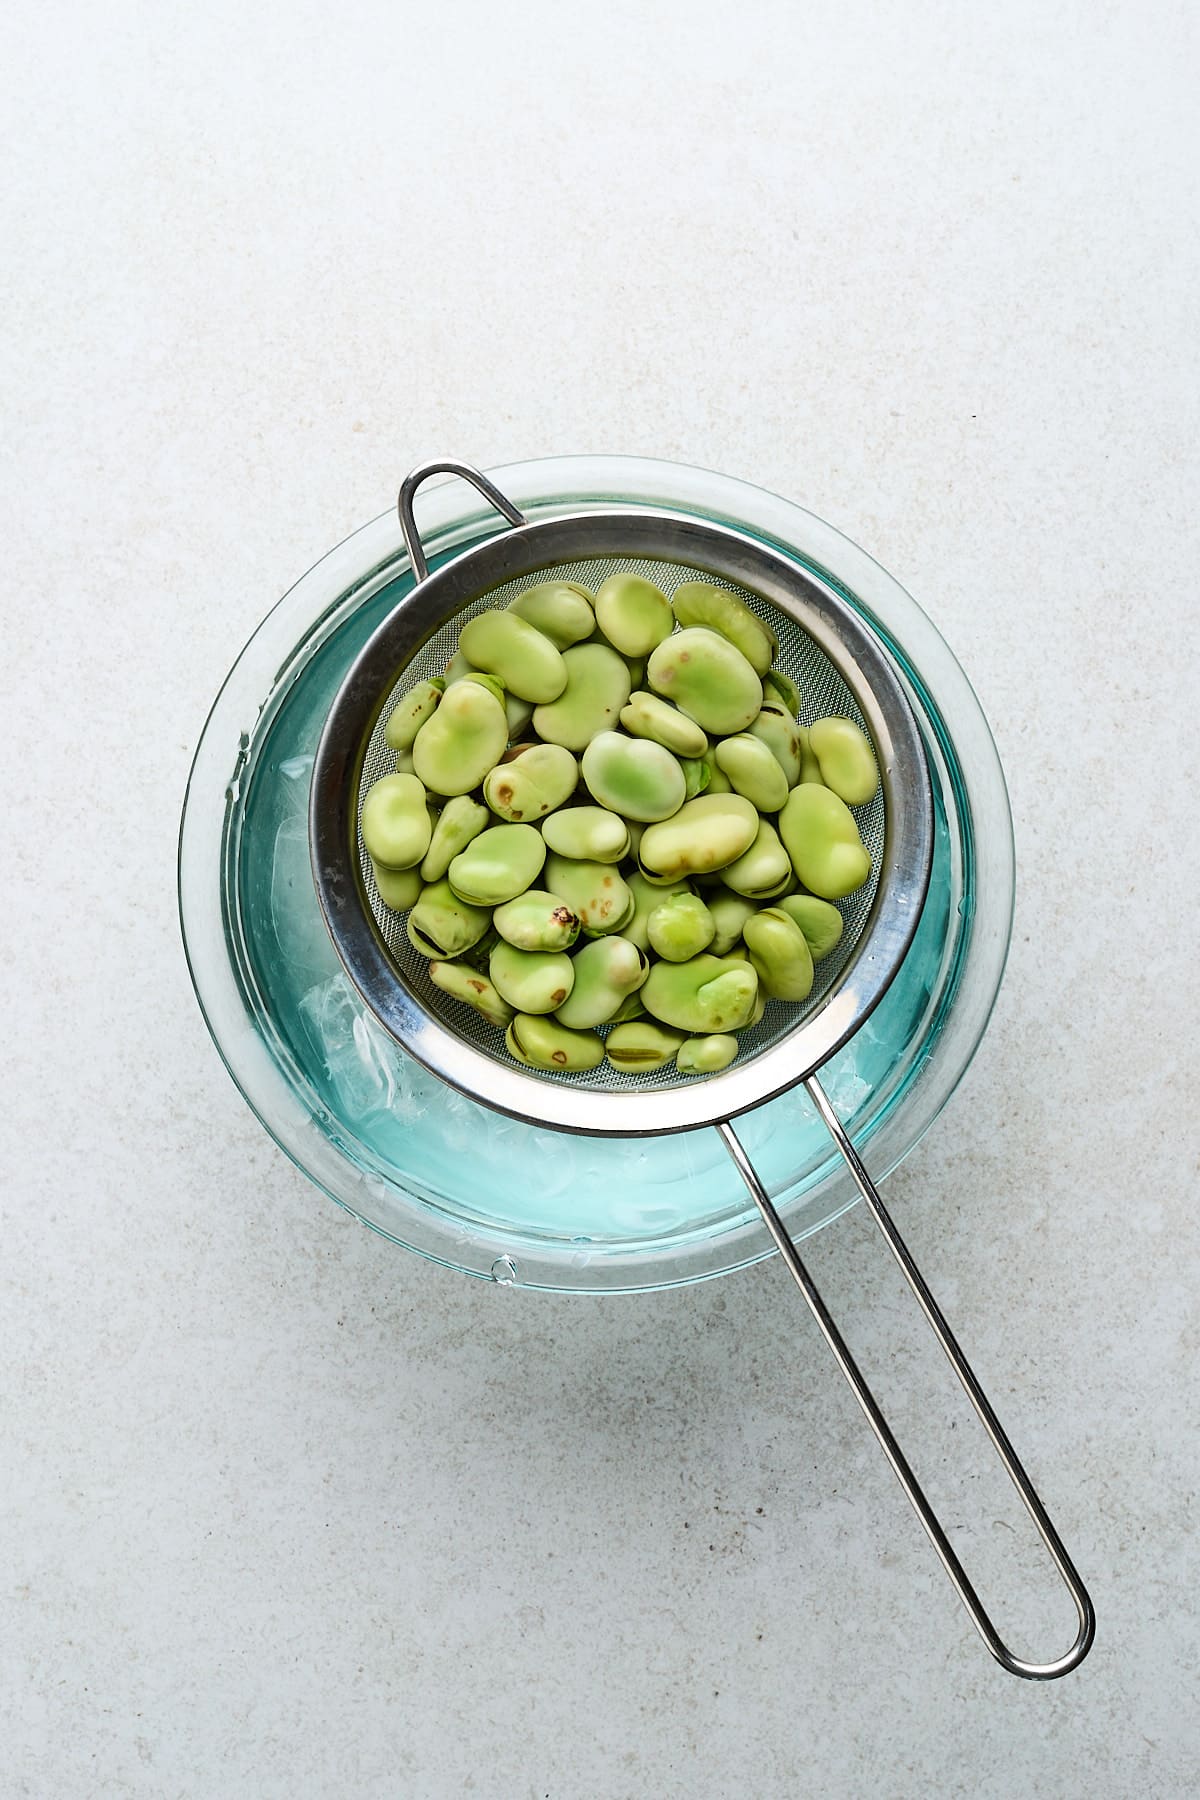 Fava beans in an ice bath.